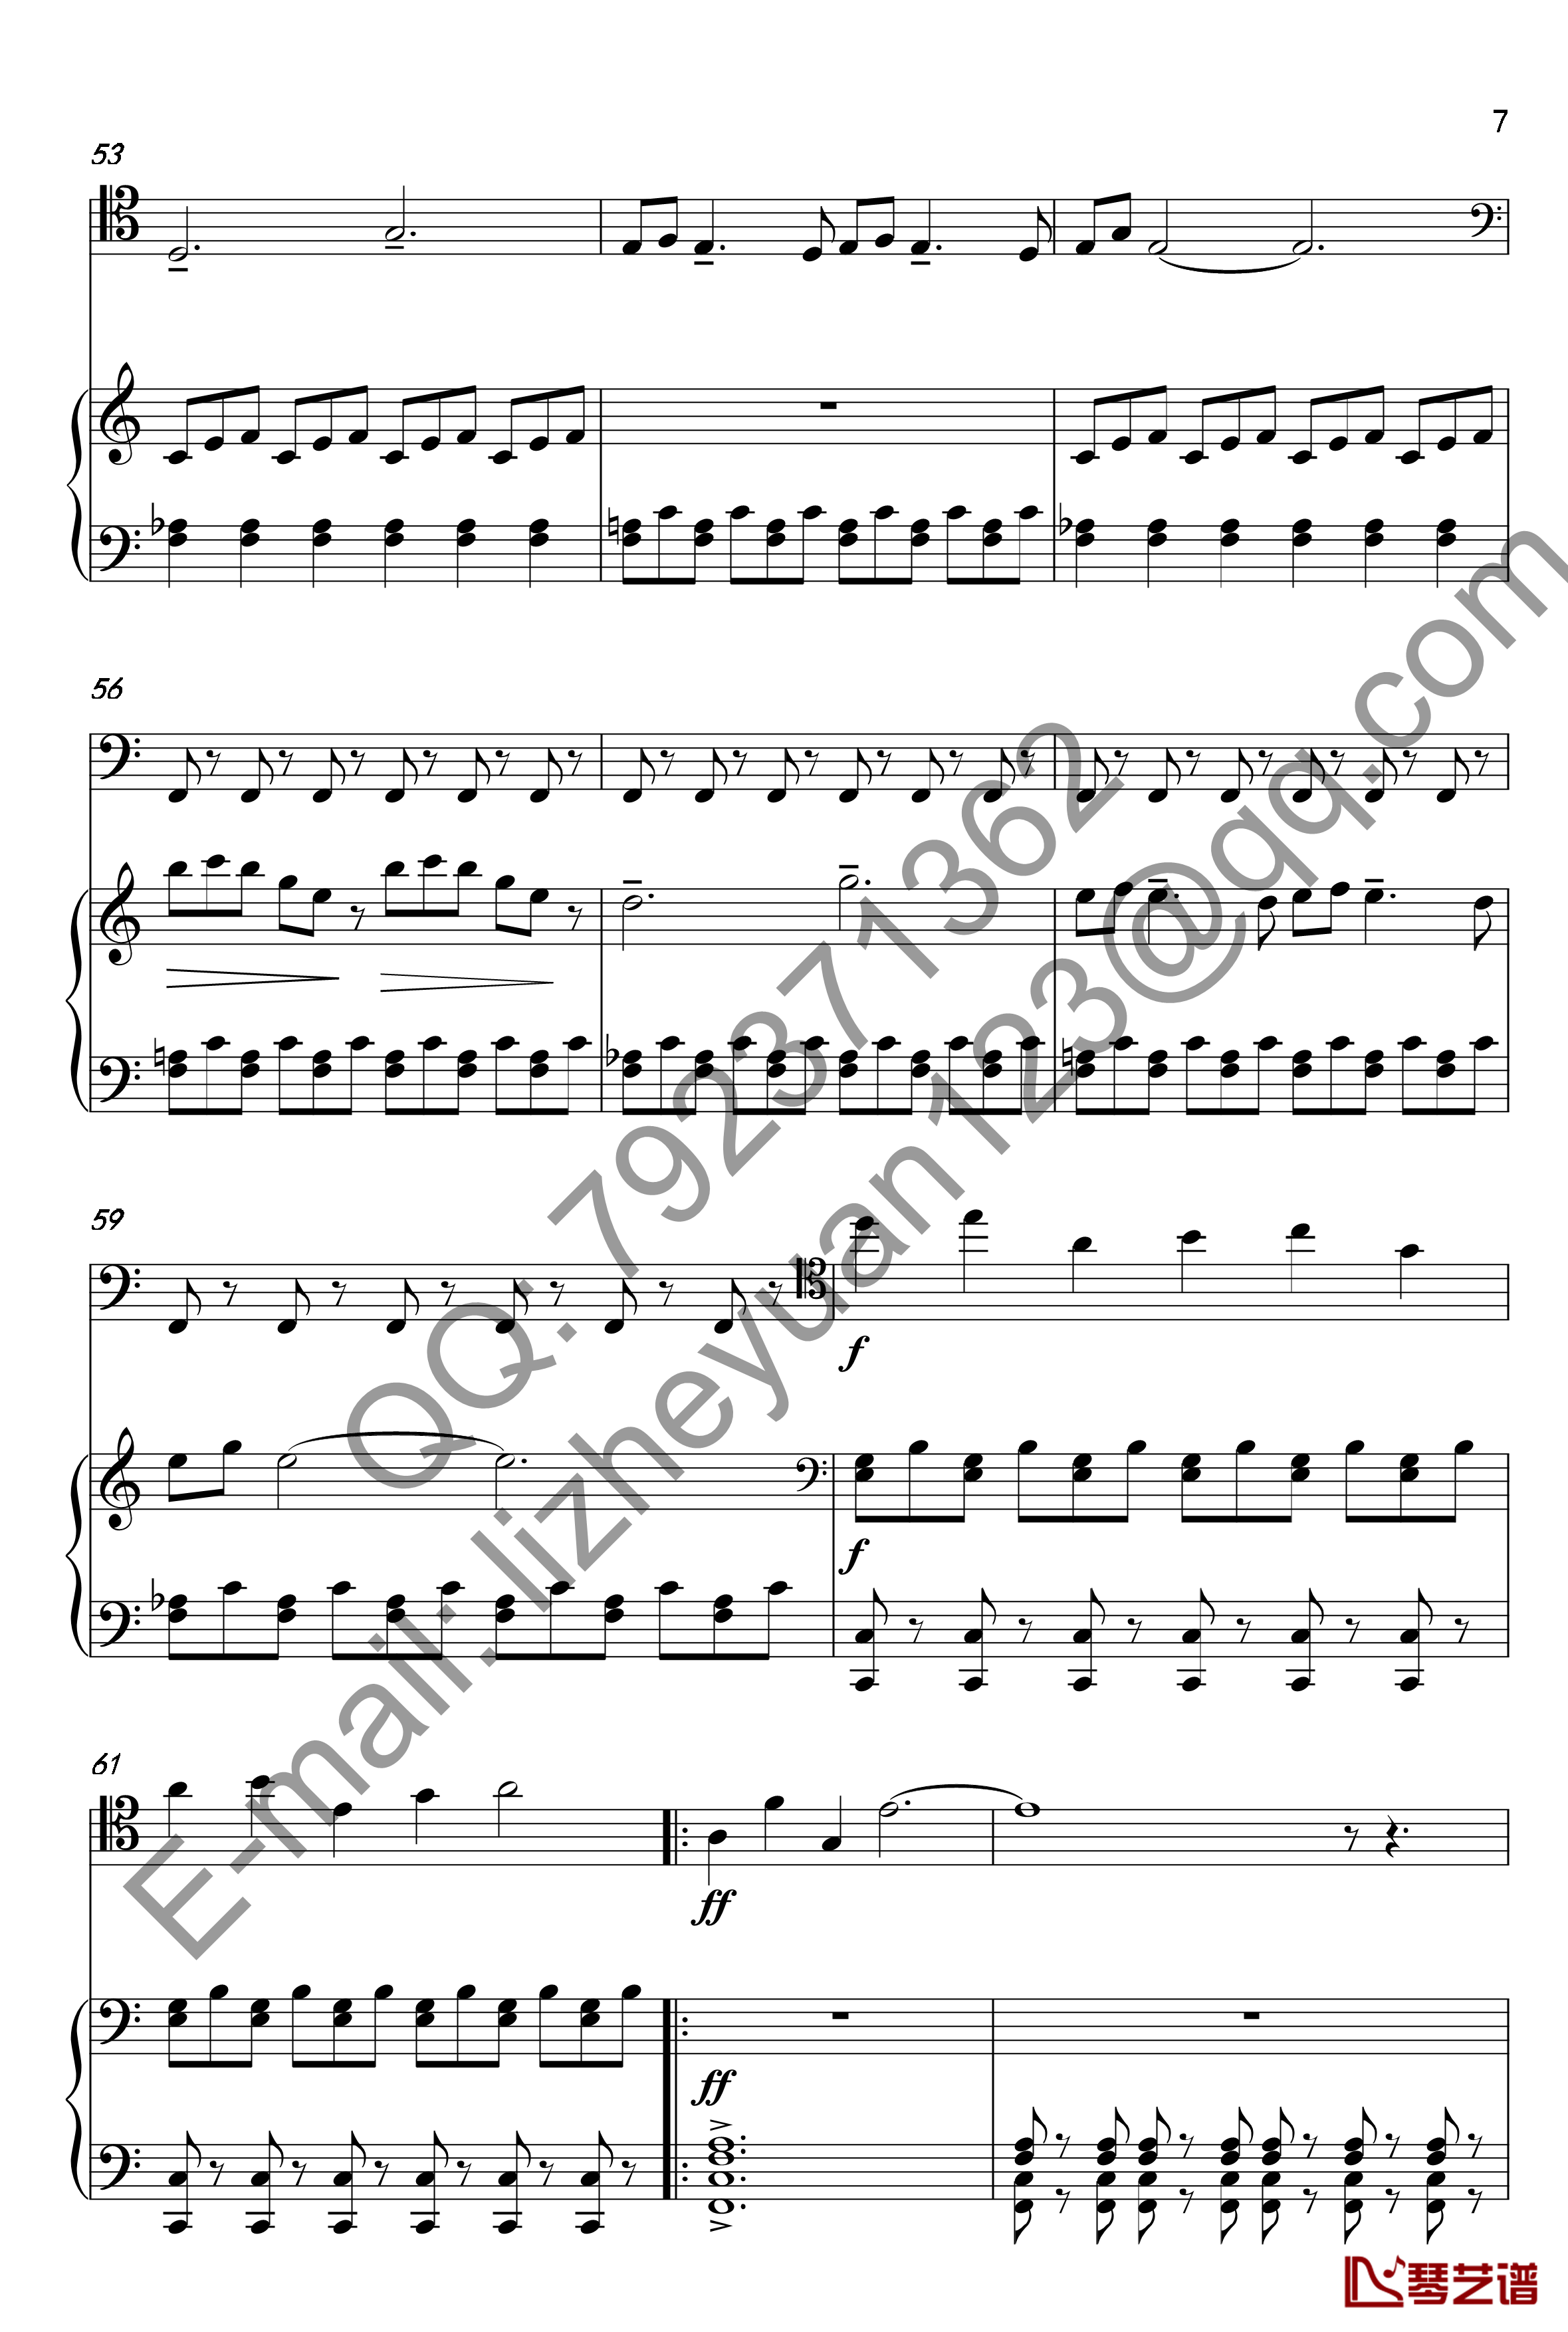 唐顿庄园主题曲钢琴谱-钢琴+大提琴-唐顿庄园7